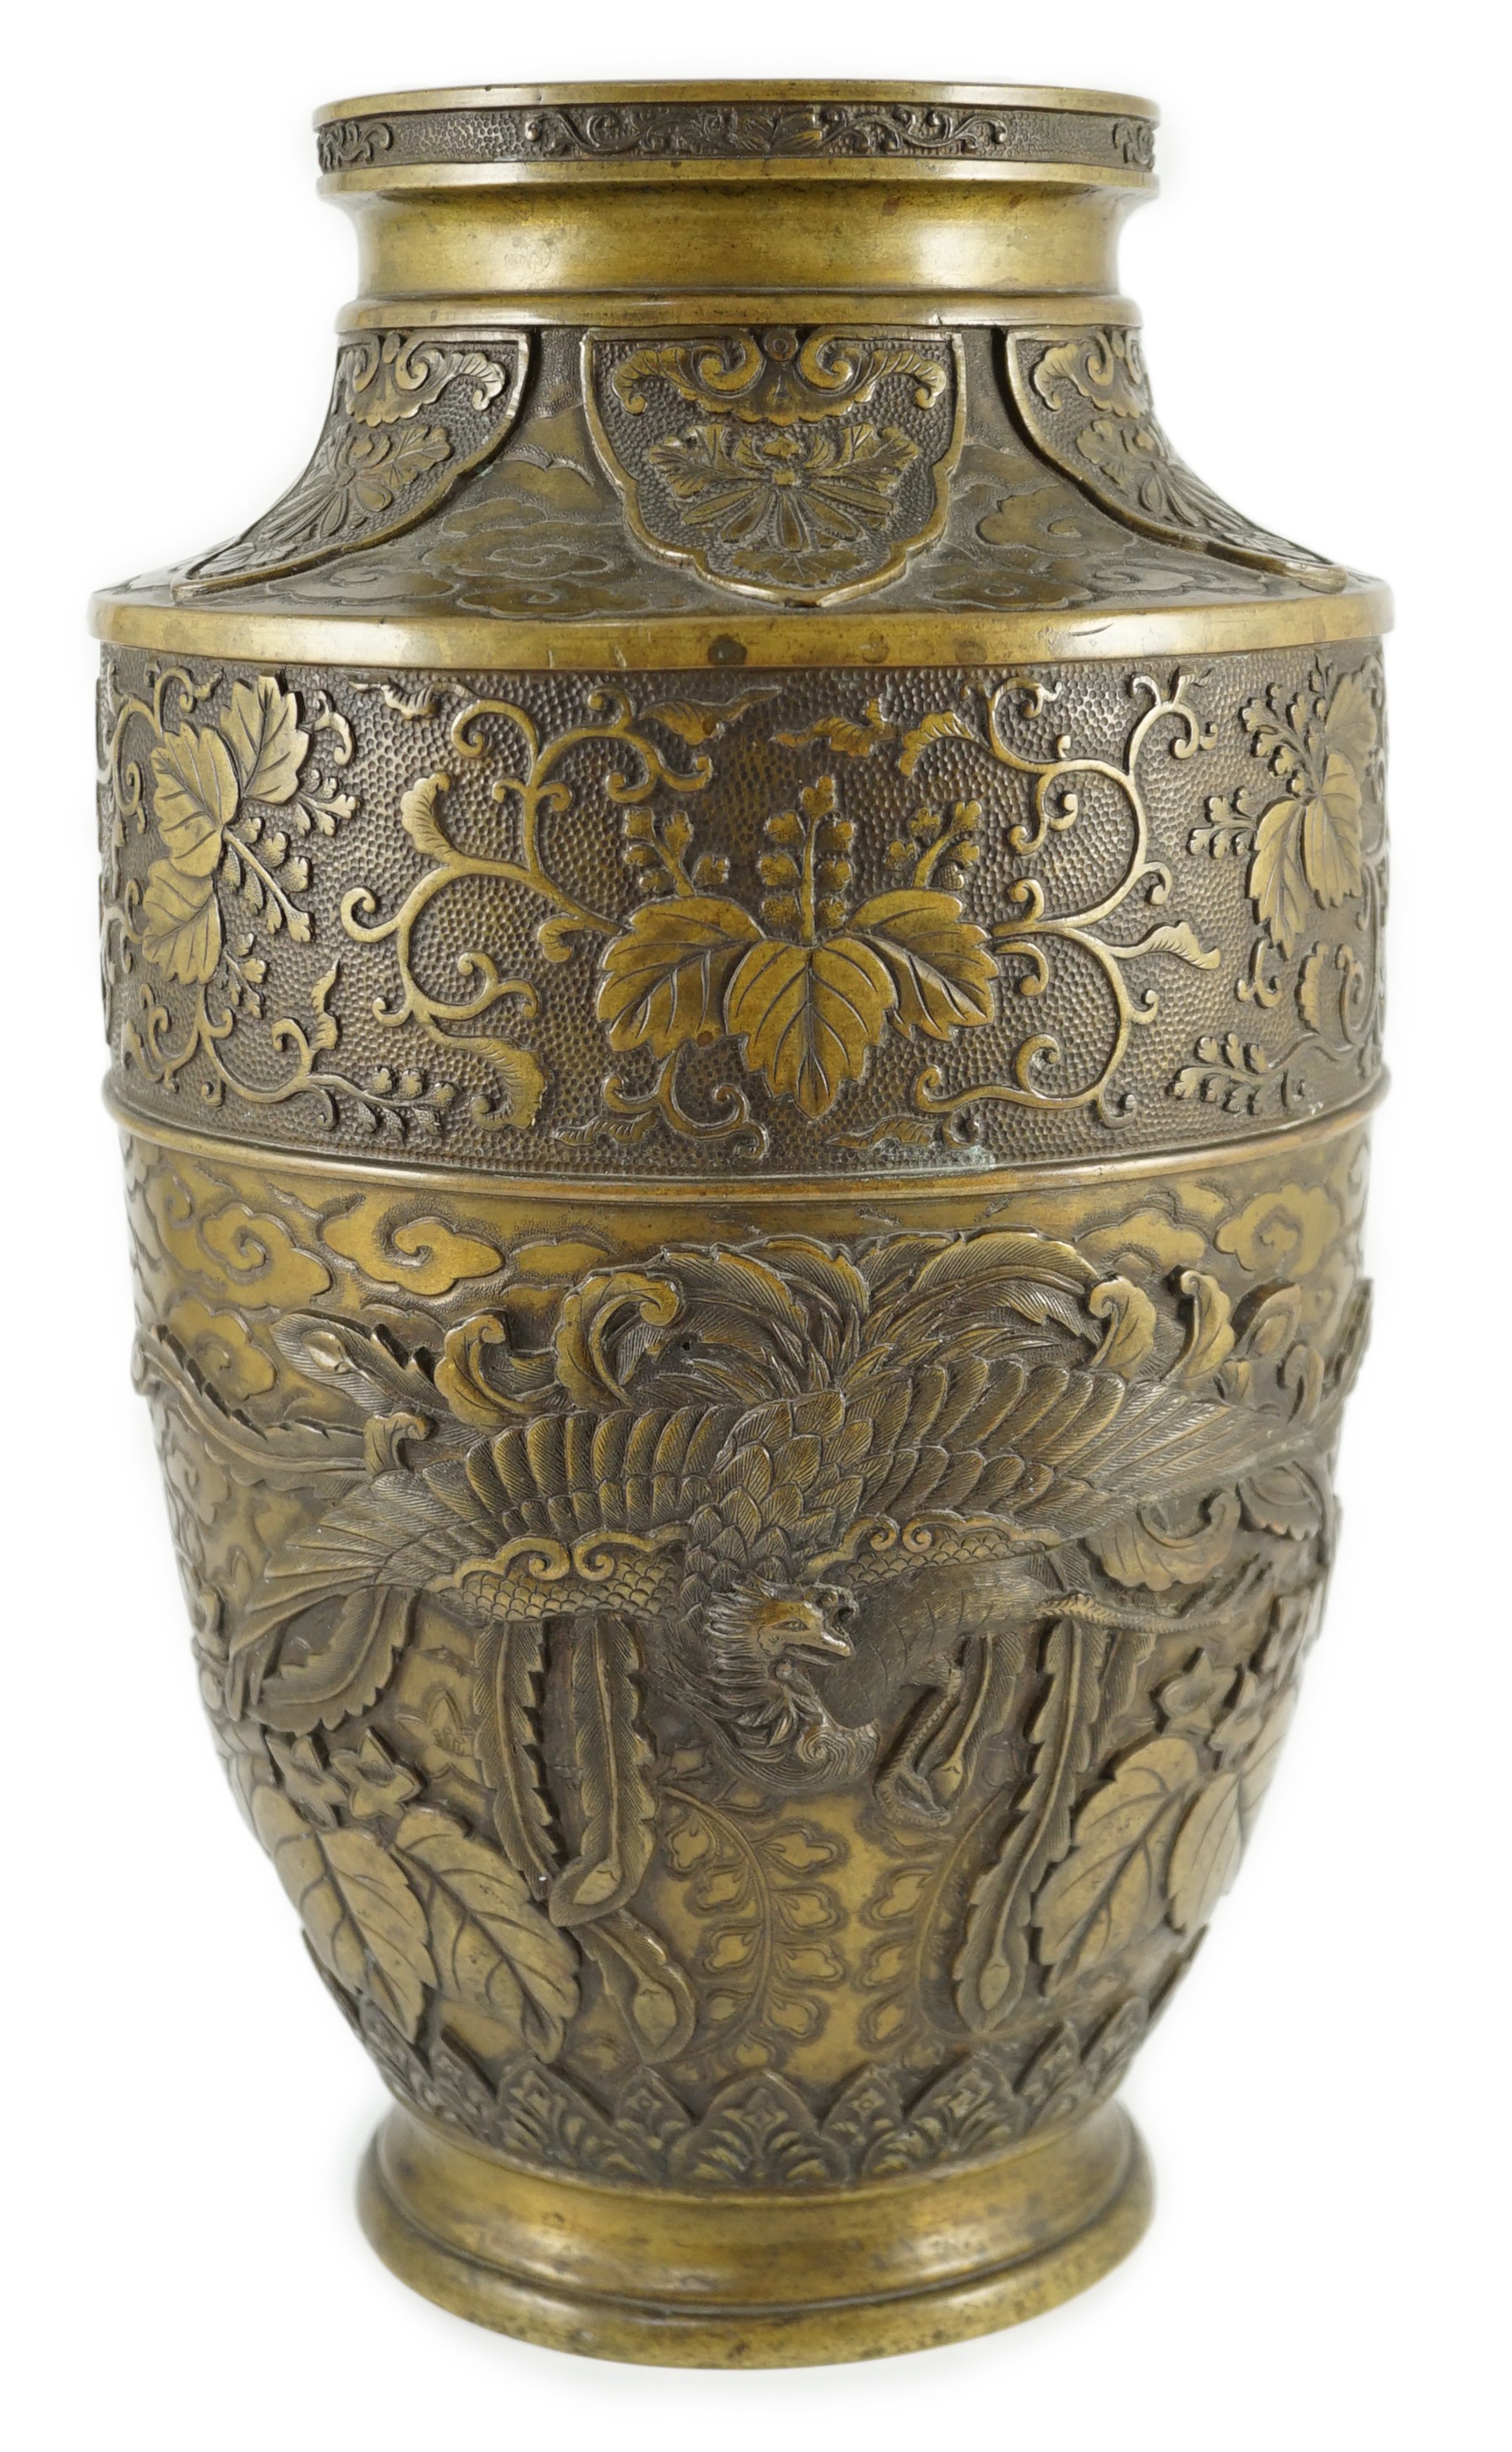 A Japanese bronze vase, Meiji period, 36.3cm high